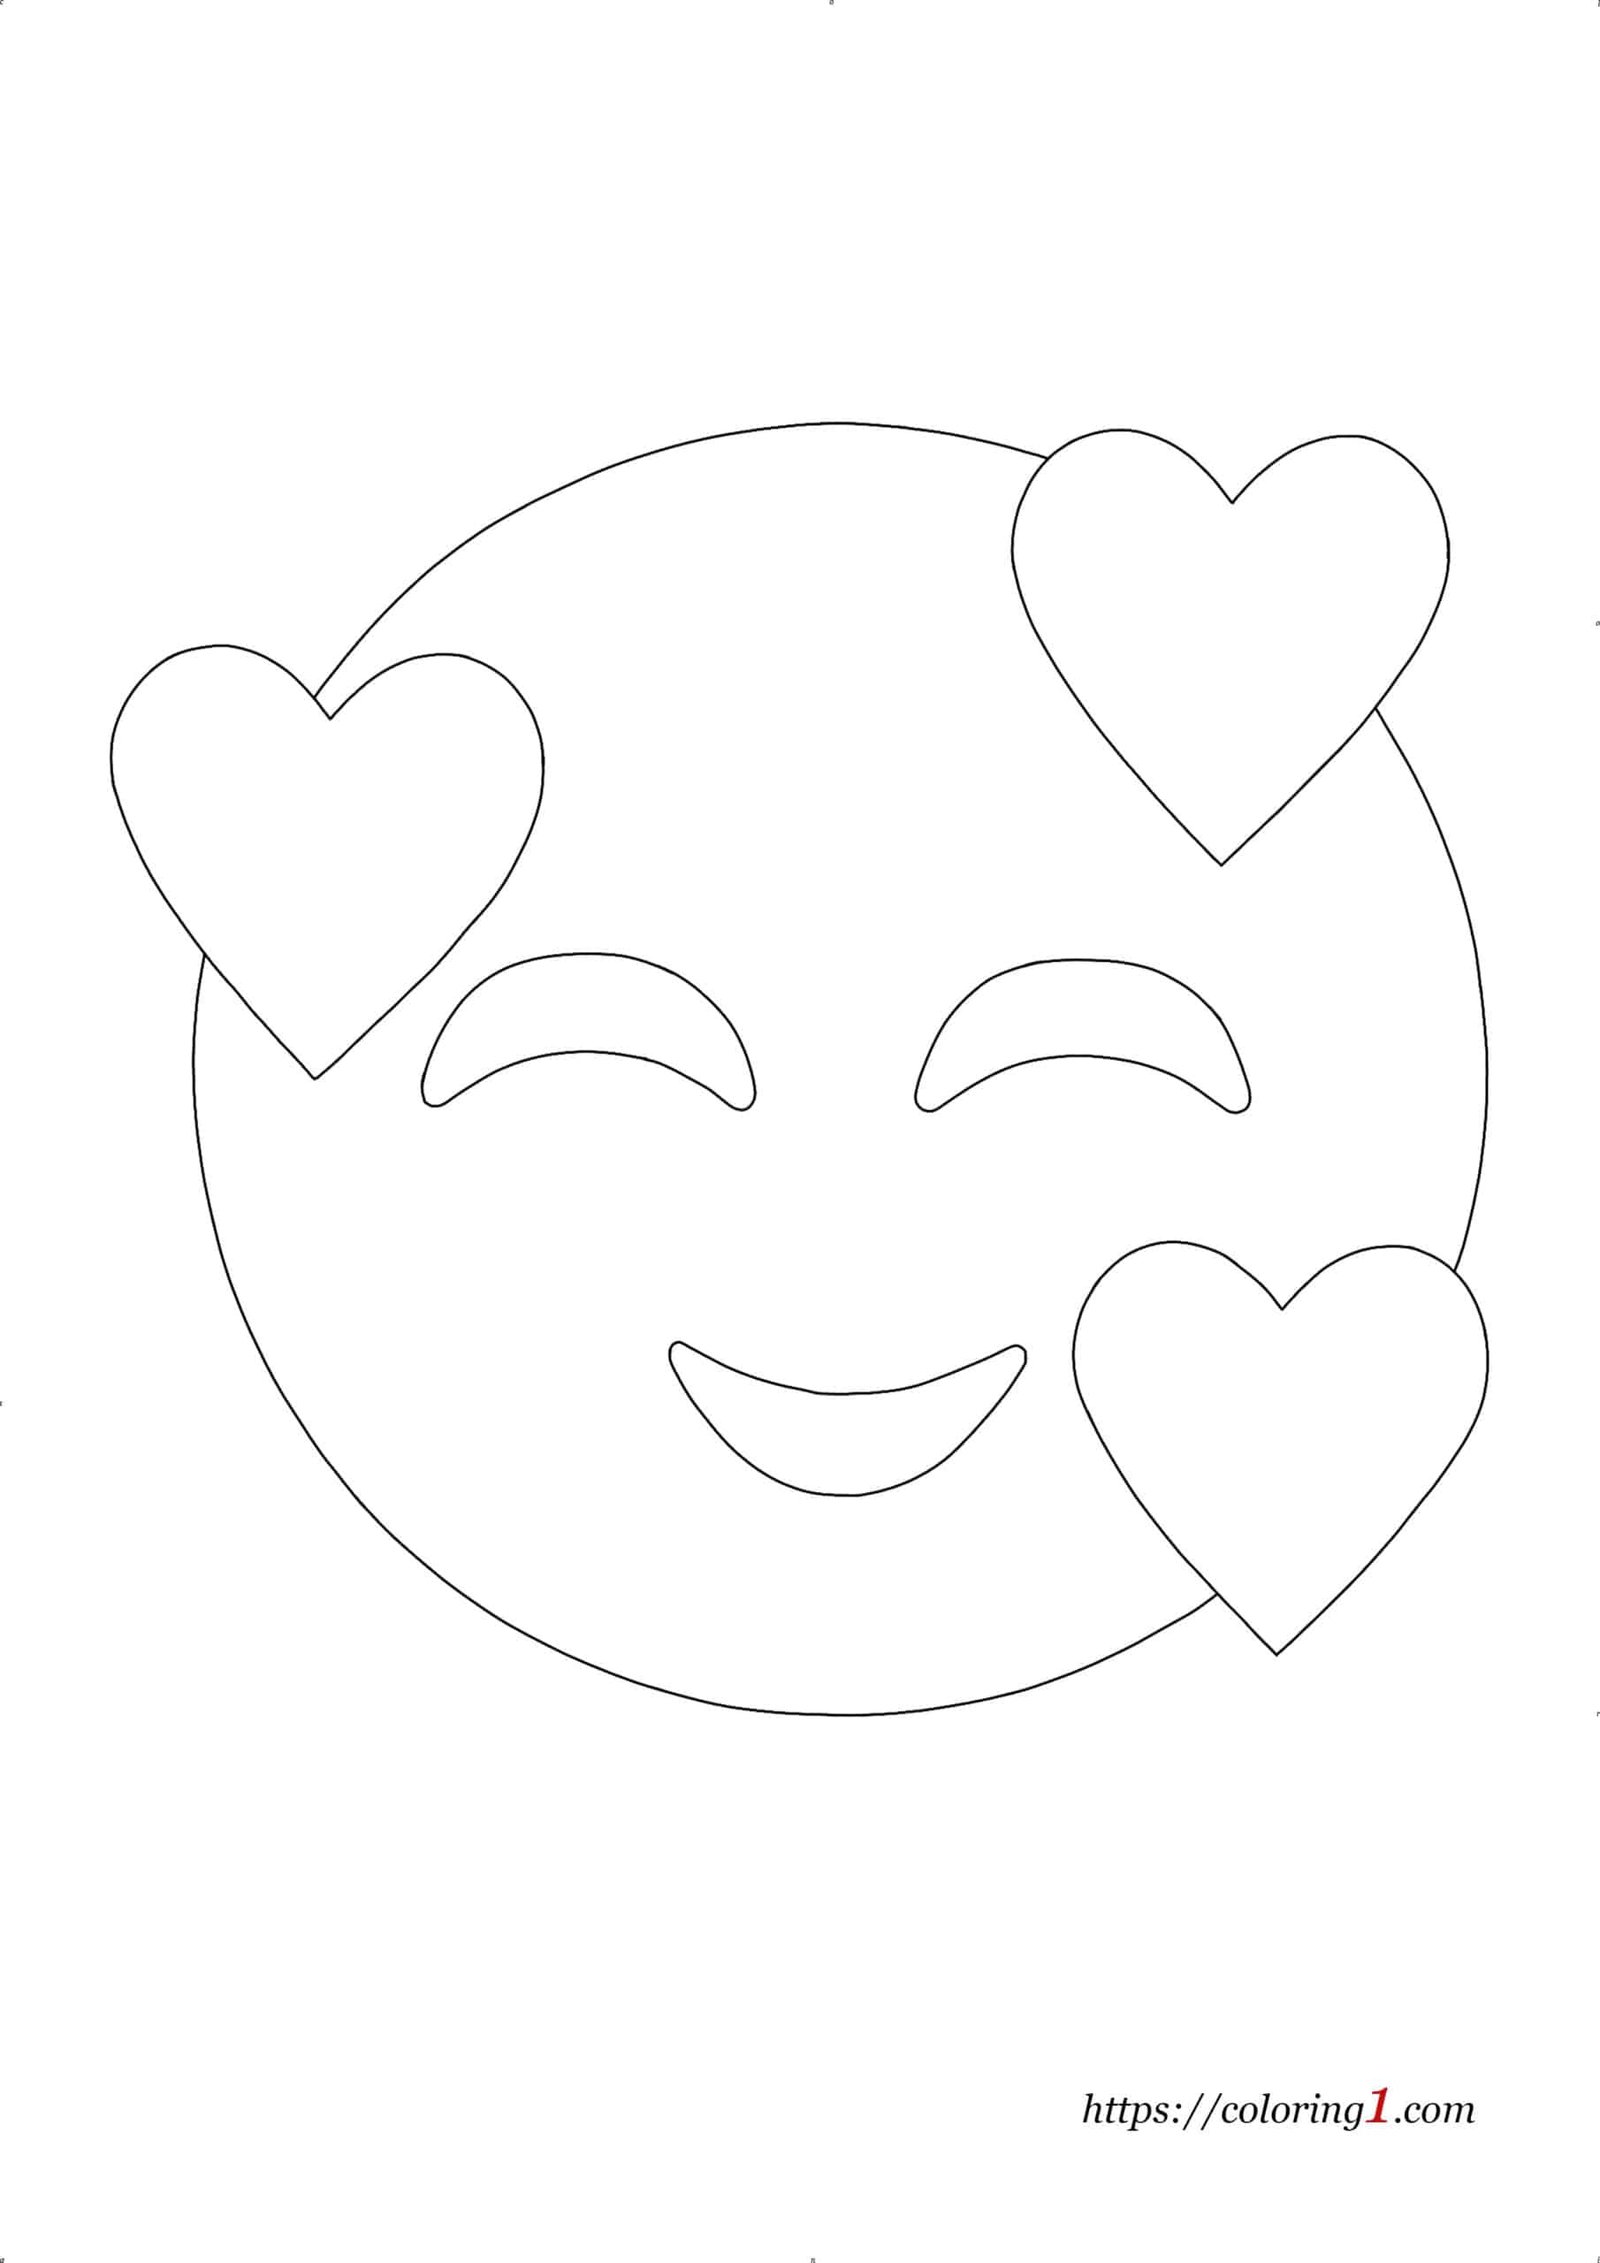 Coloriage Emoji Coeur À Imprimer Gratuit